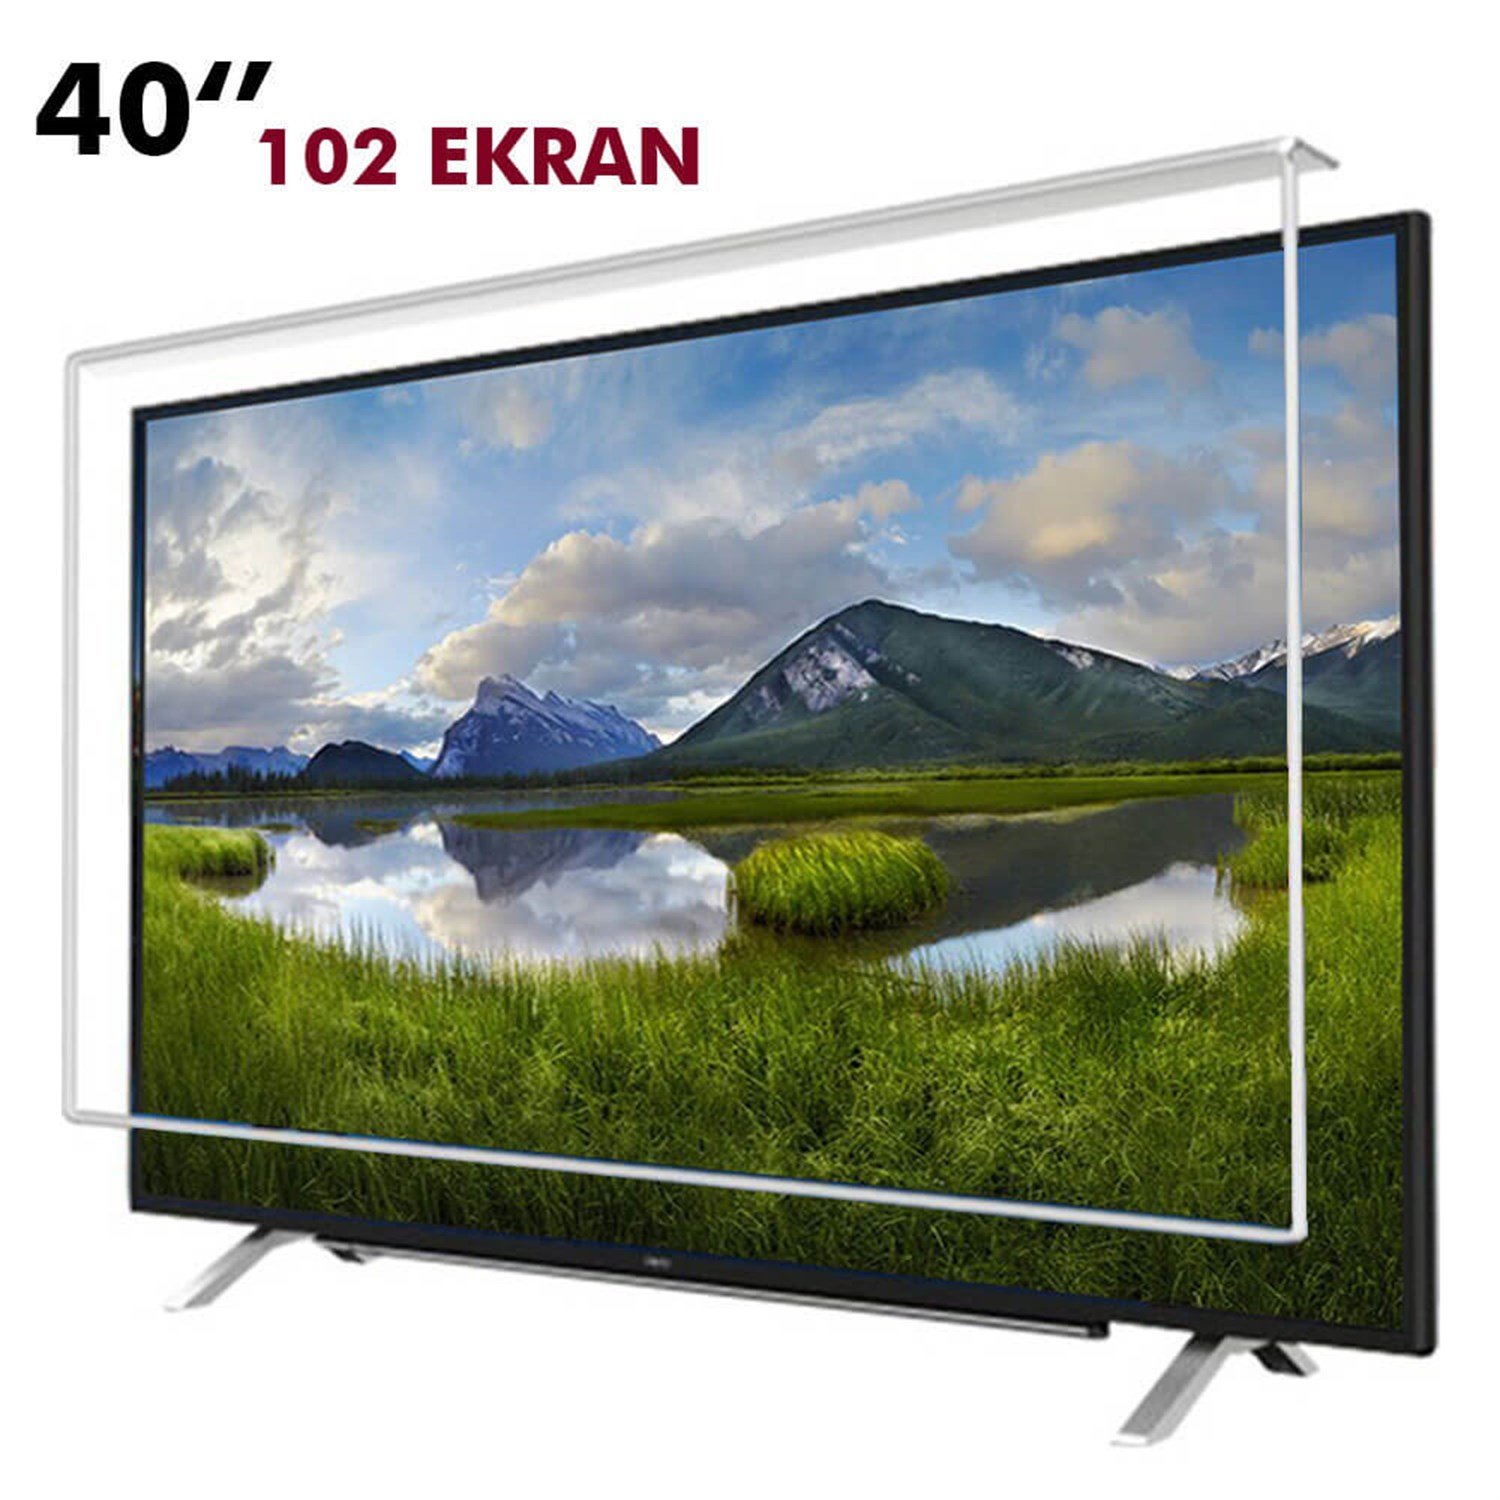 Tv Ekran Koruyucu 102 Ekran(40” inch) | Okularenkkat.com